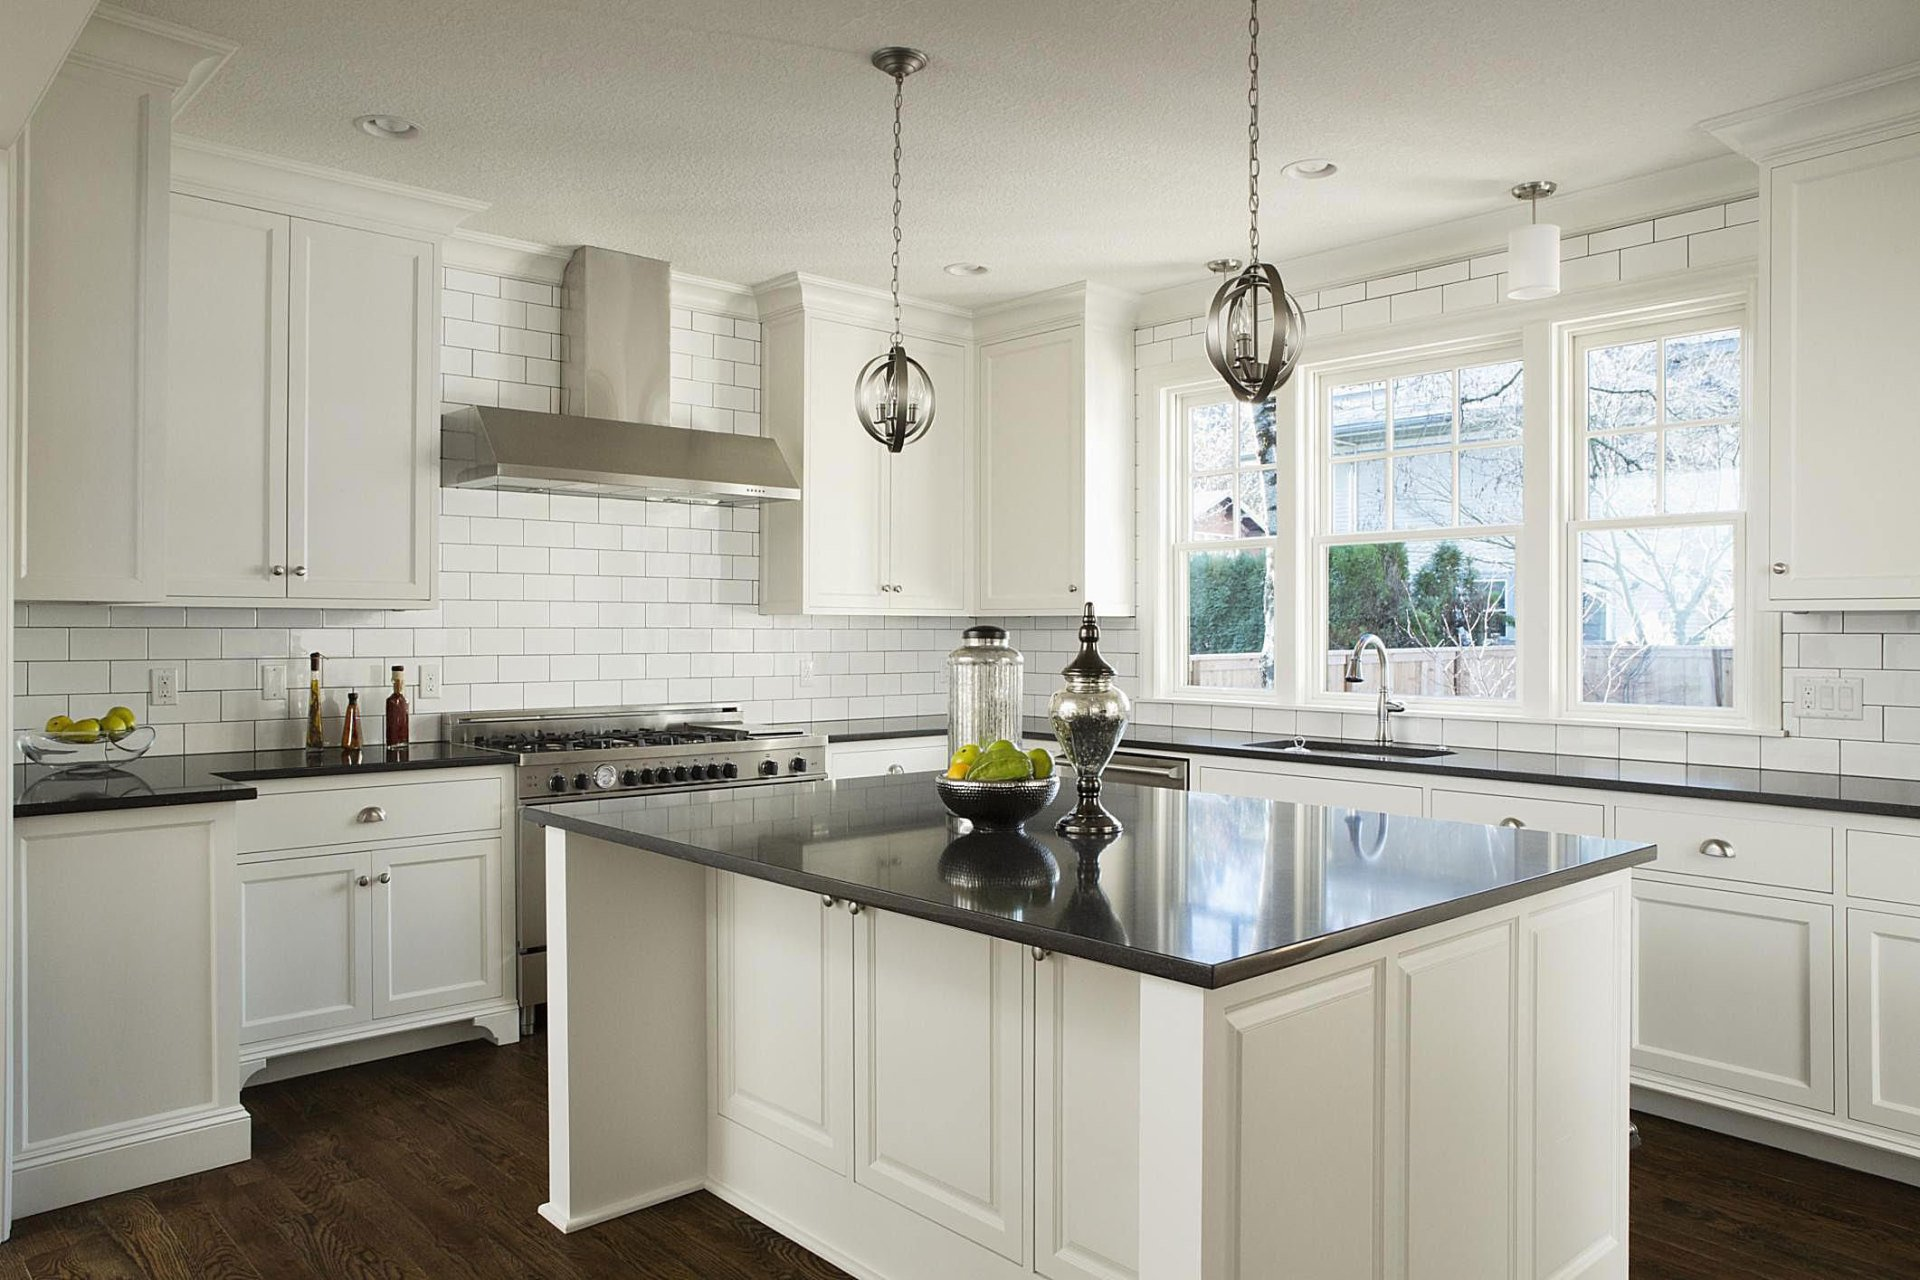 Tom Gensler | Kitchens - Home Remodeling